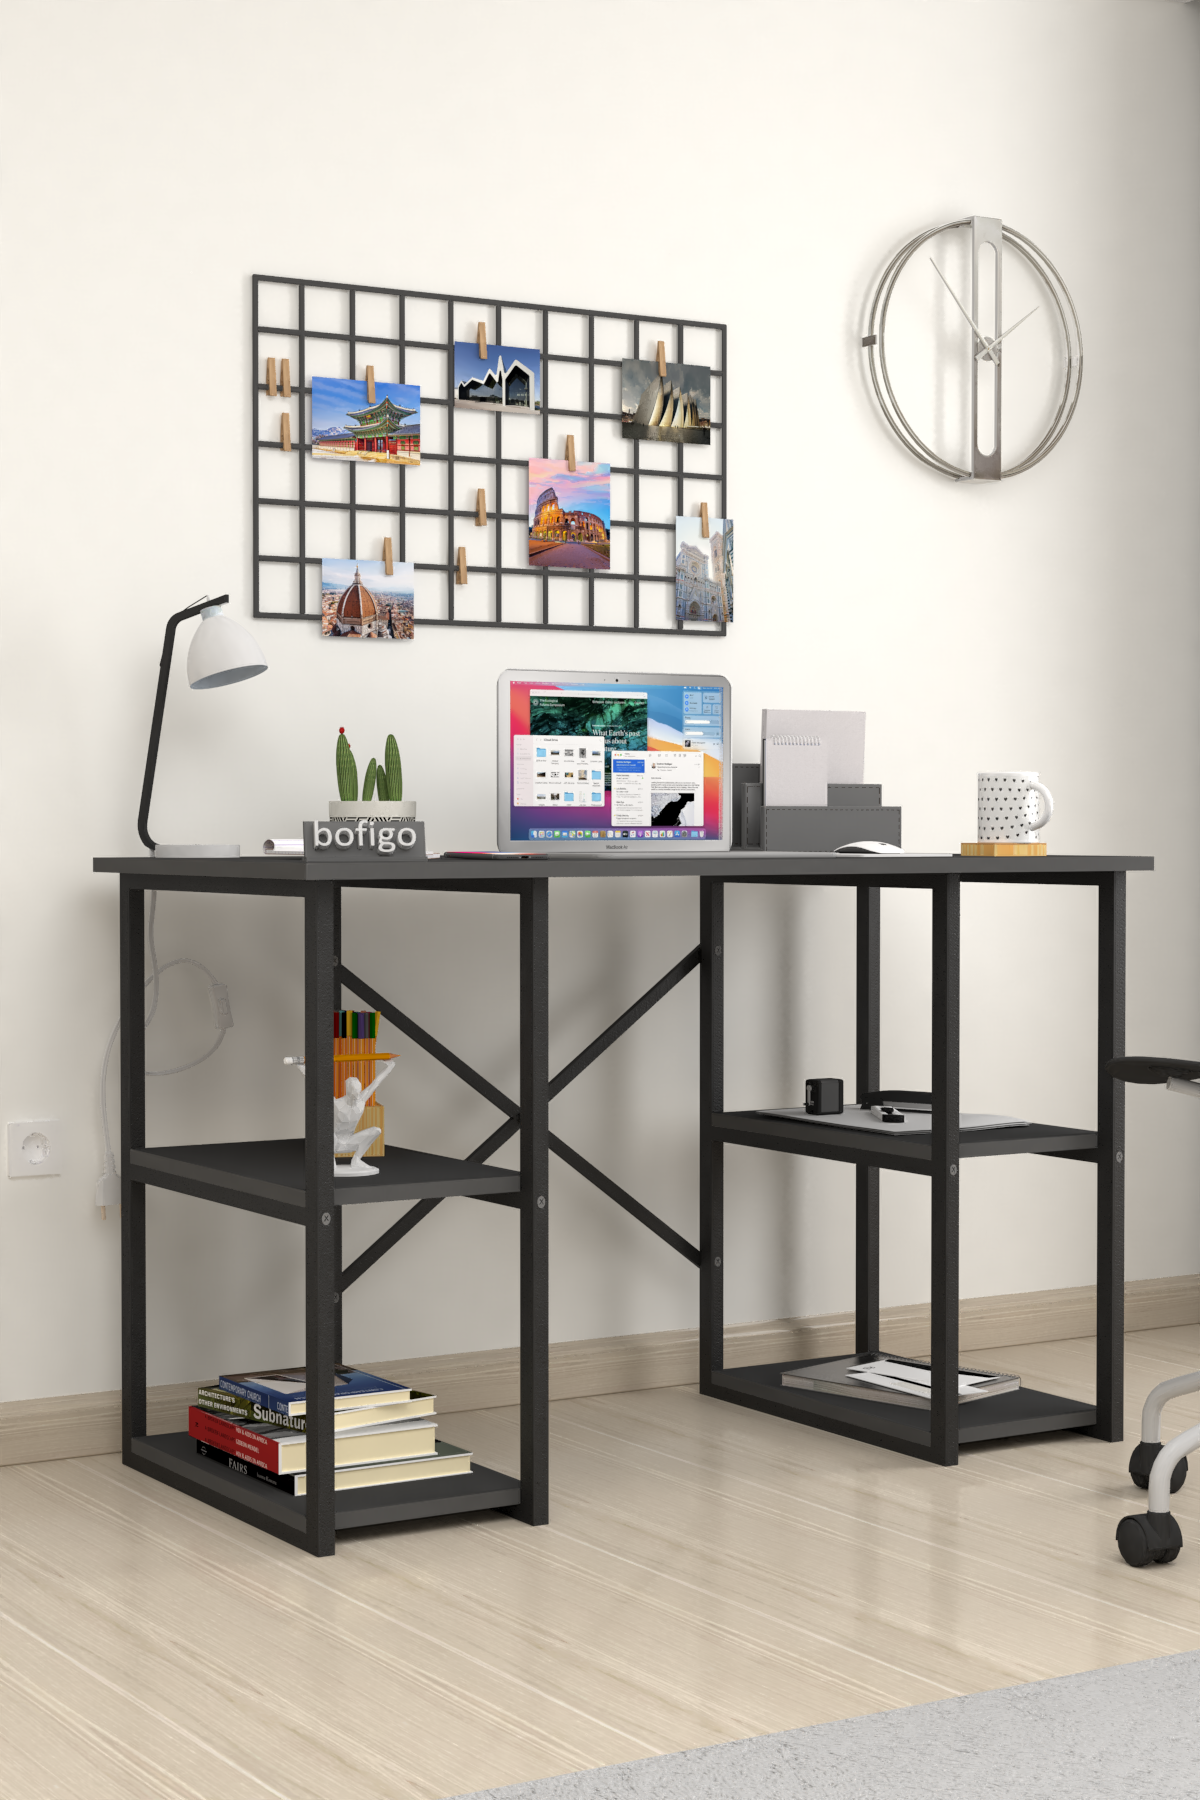 Bofigo 4 Shelf Study Desk 60x120 cm Anthracite